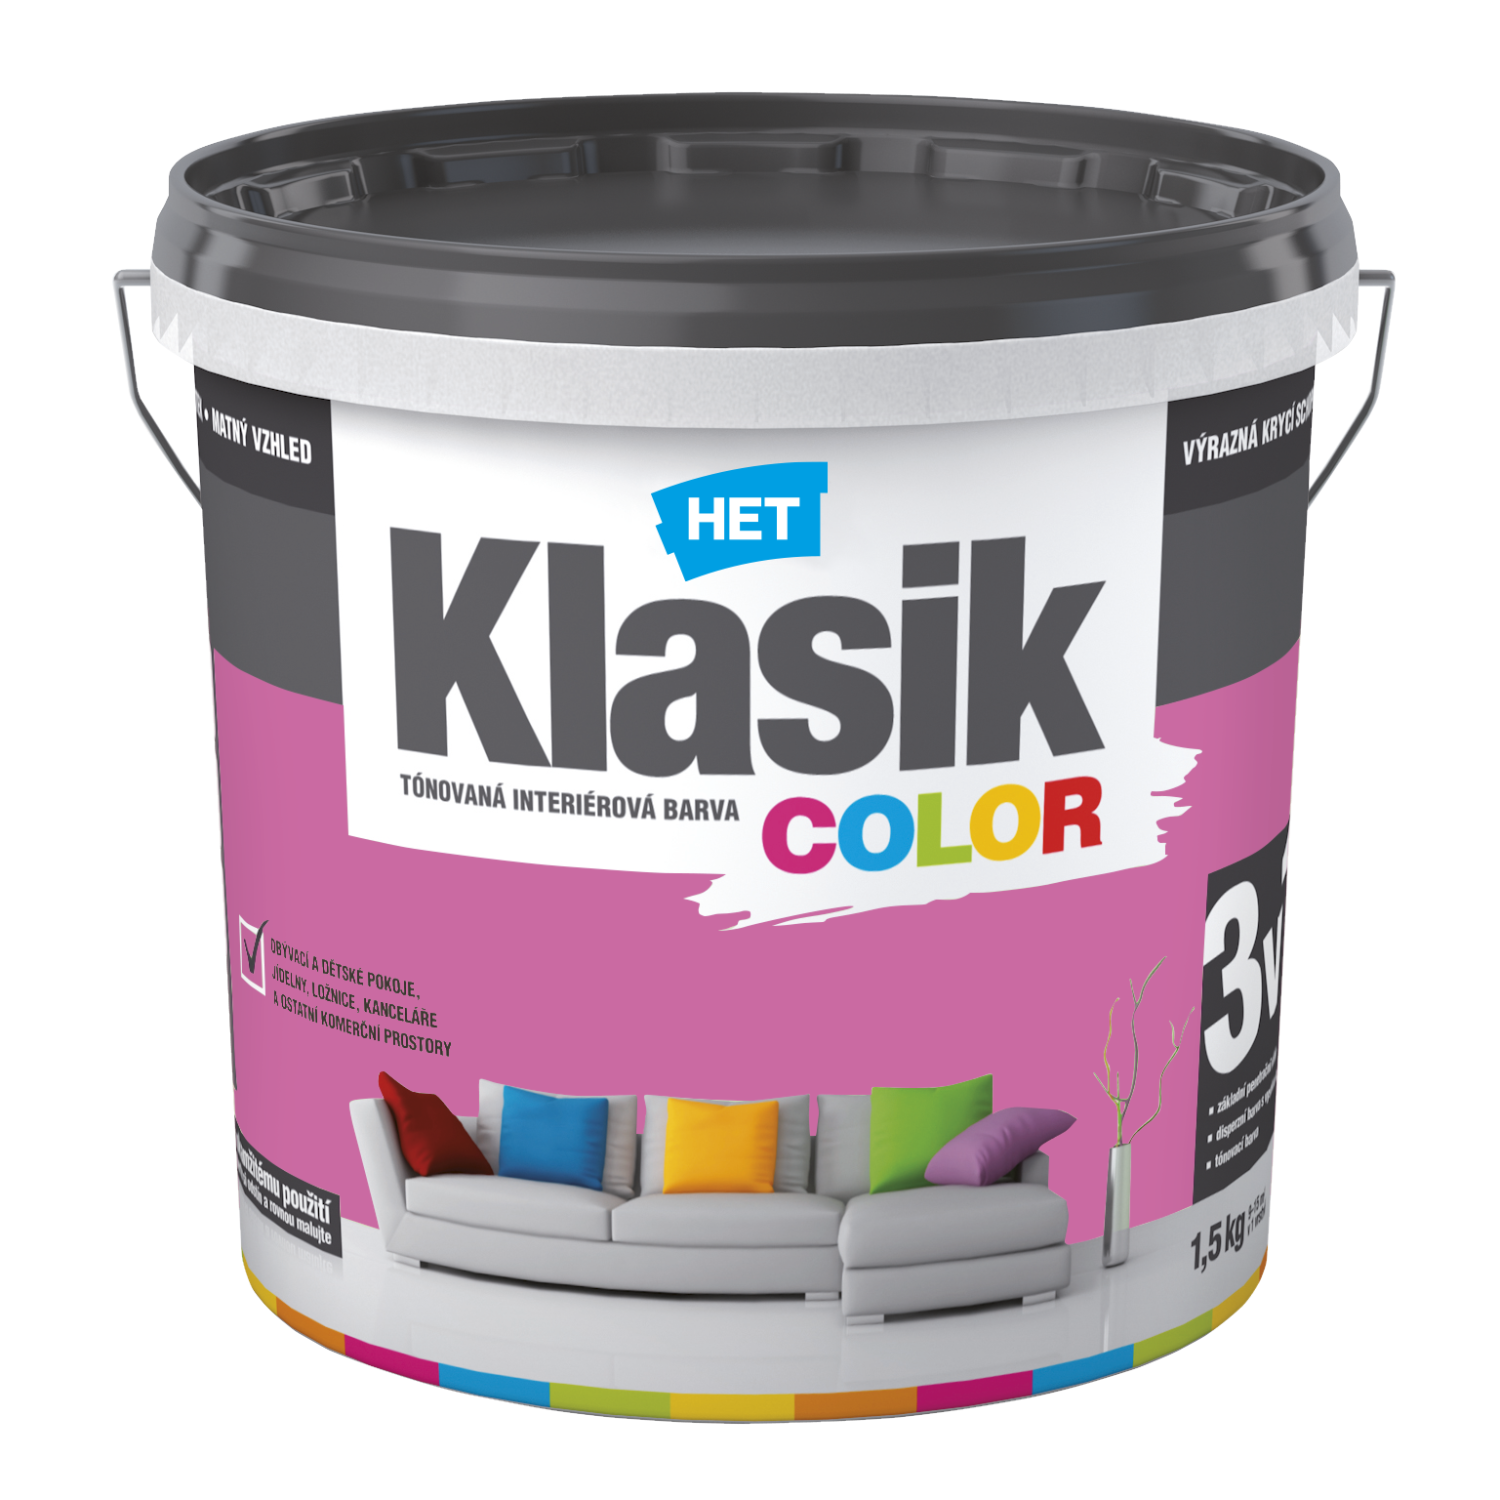 HET Klasik COLOR tónovaná interiérová akrylátová disperzná oteruvzdorná farba 1,5 kg, KC0317 - purpurový